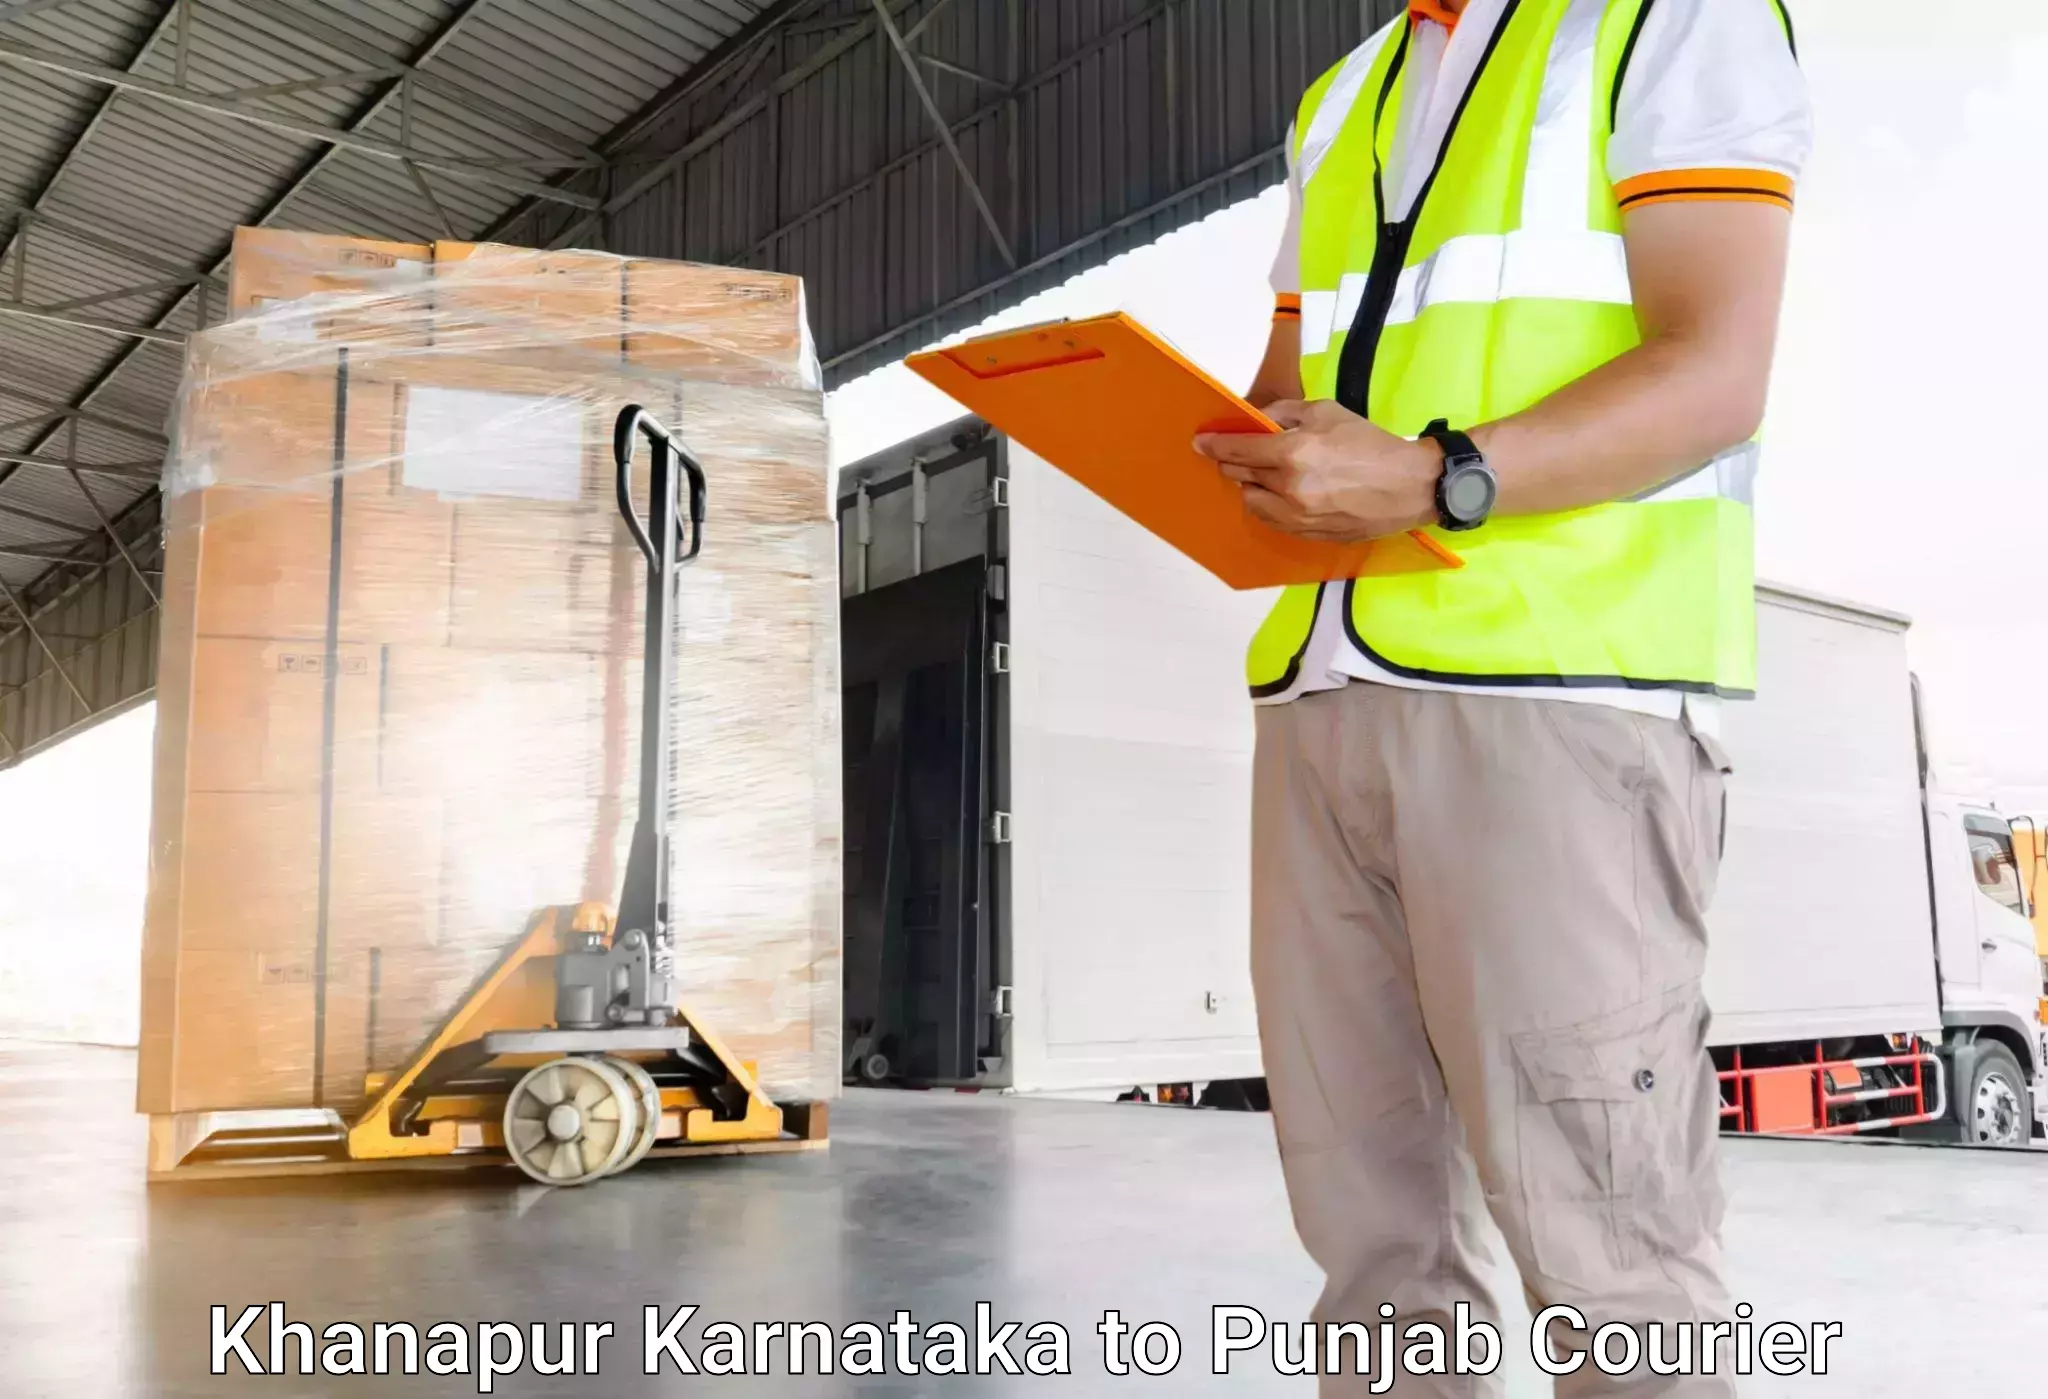 Luggage delivery system Khanapur Karnataka to Central University of Punjab Bathinda